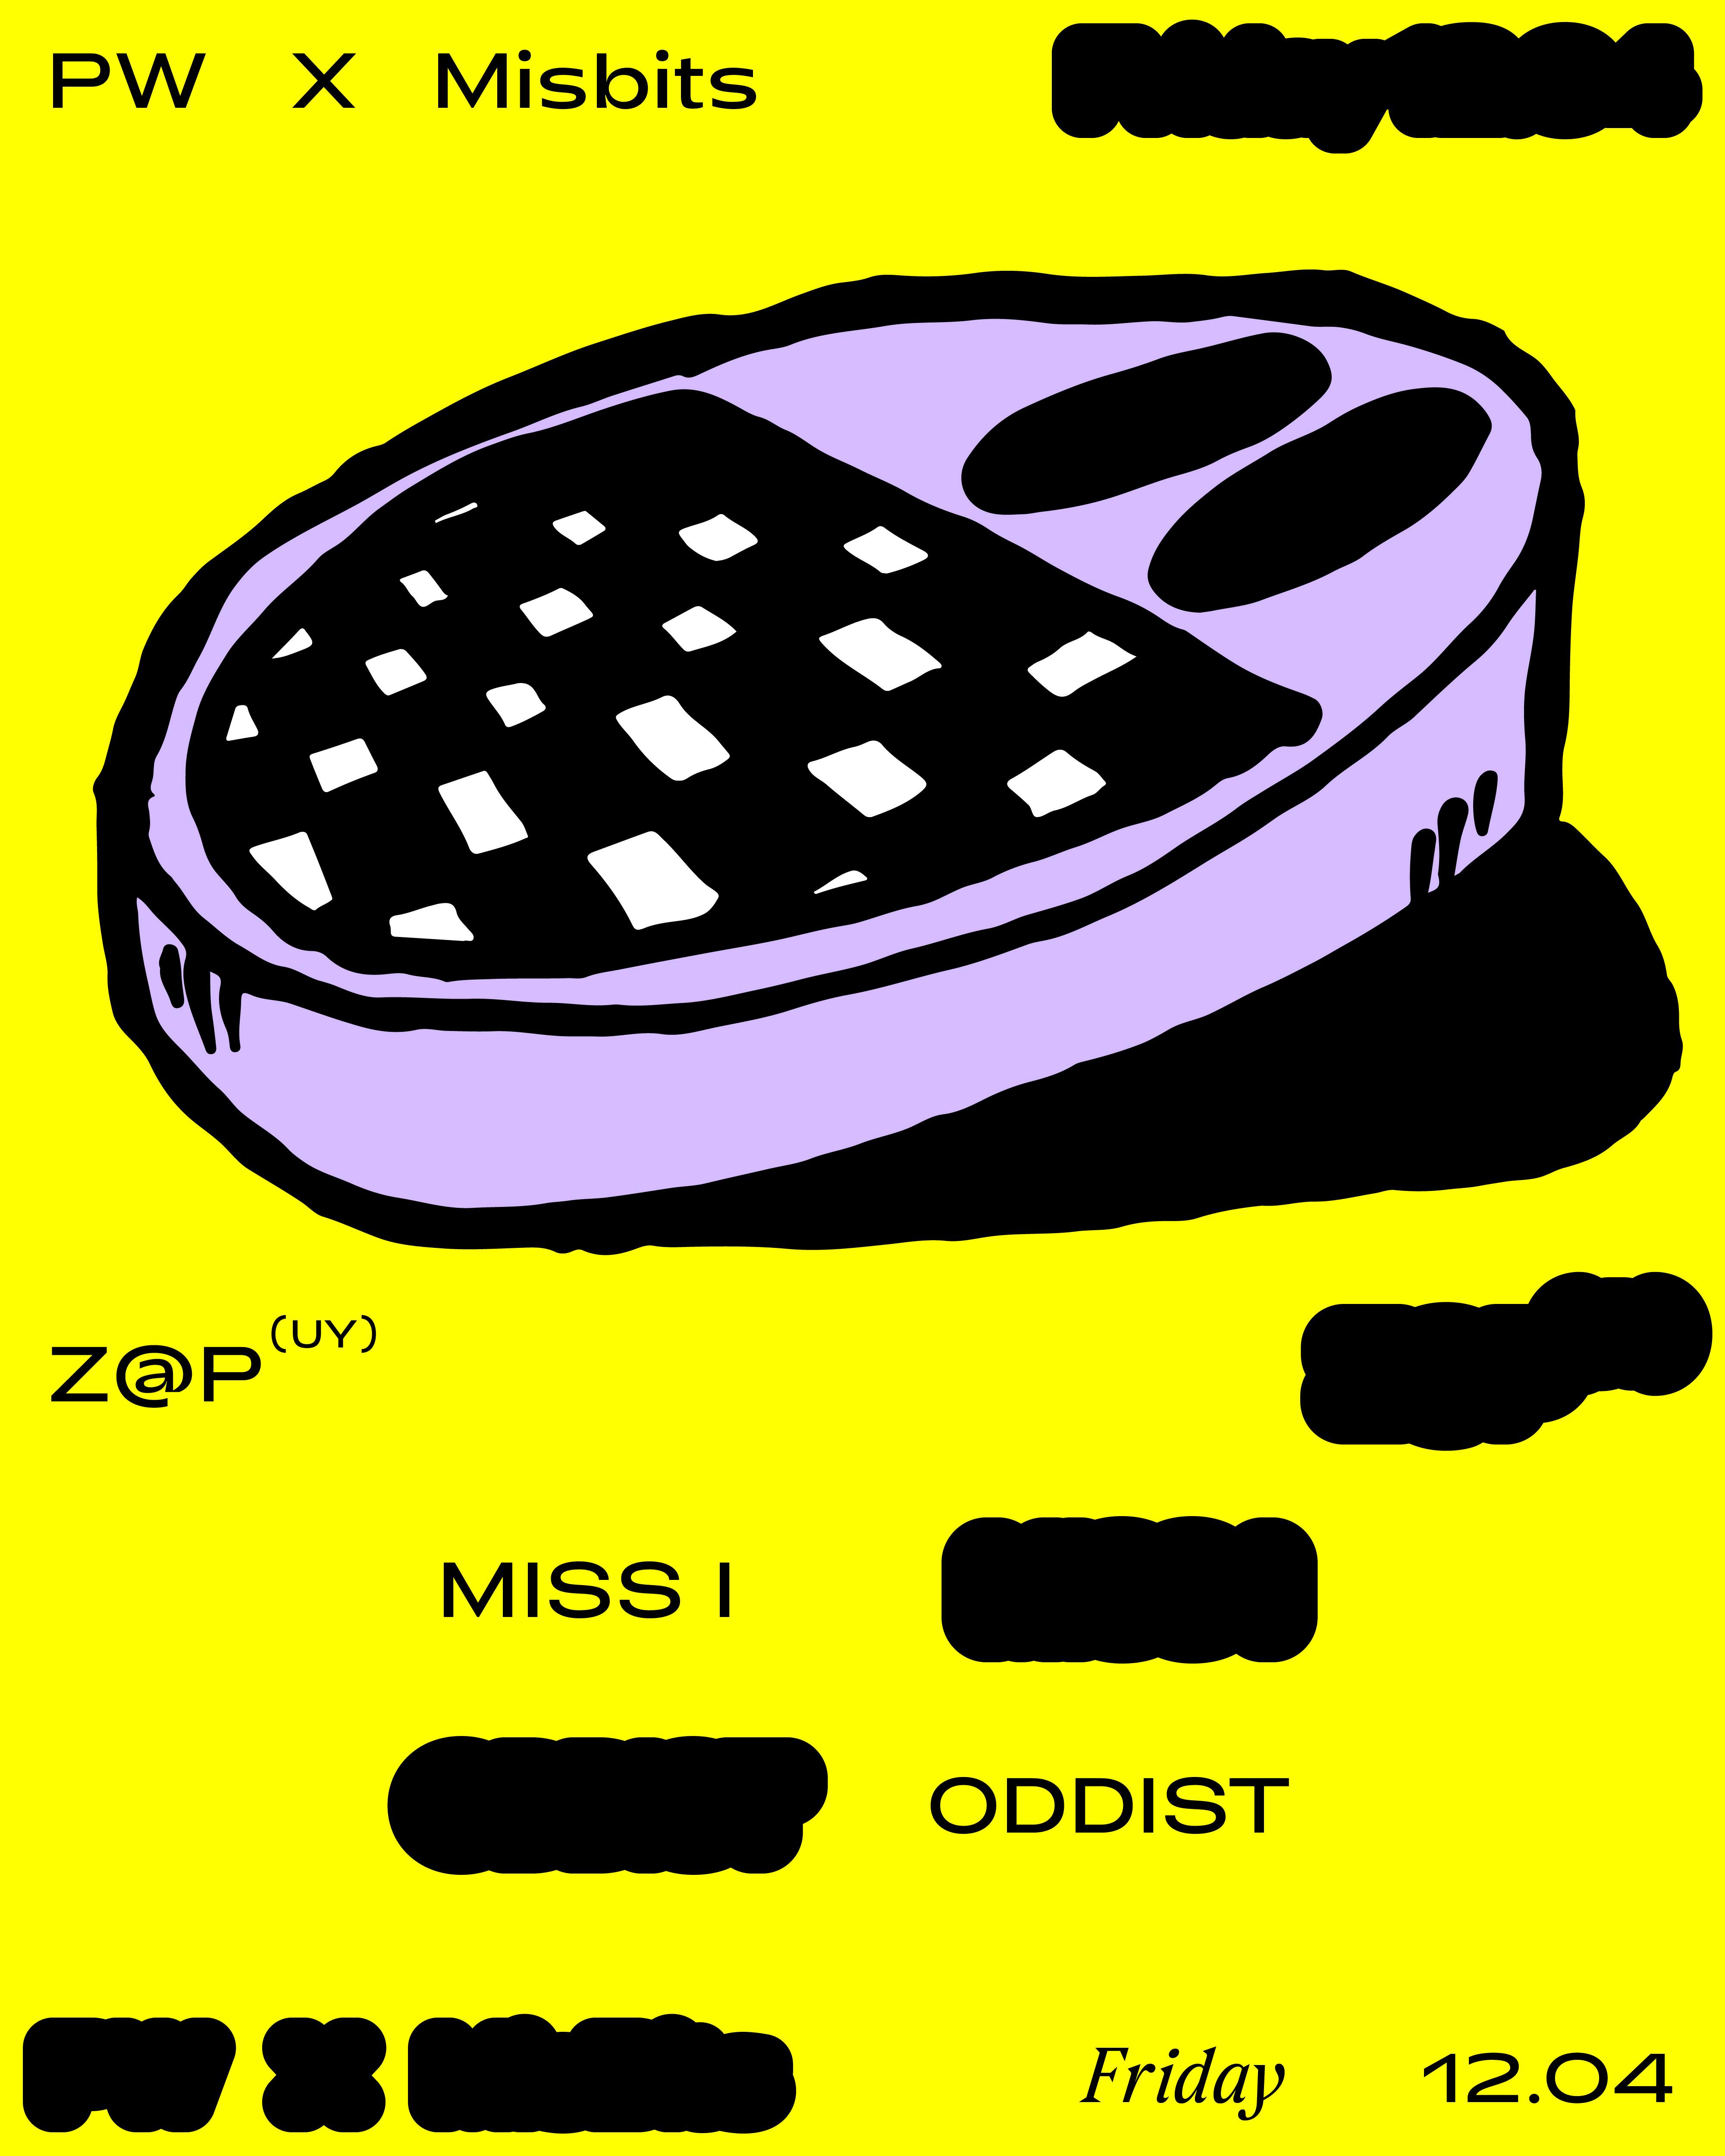 PW x Misbits • Z@p, Miss I, oddist - Página frontal